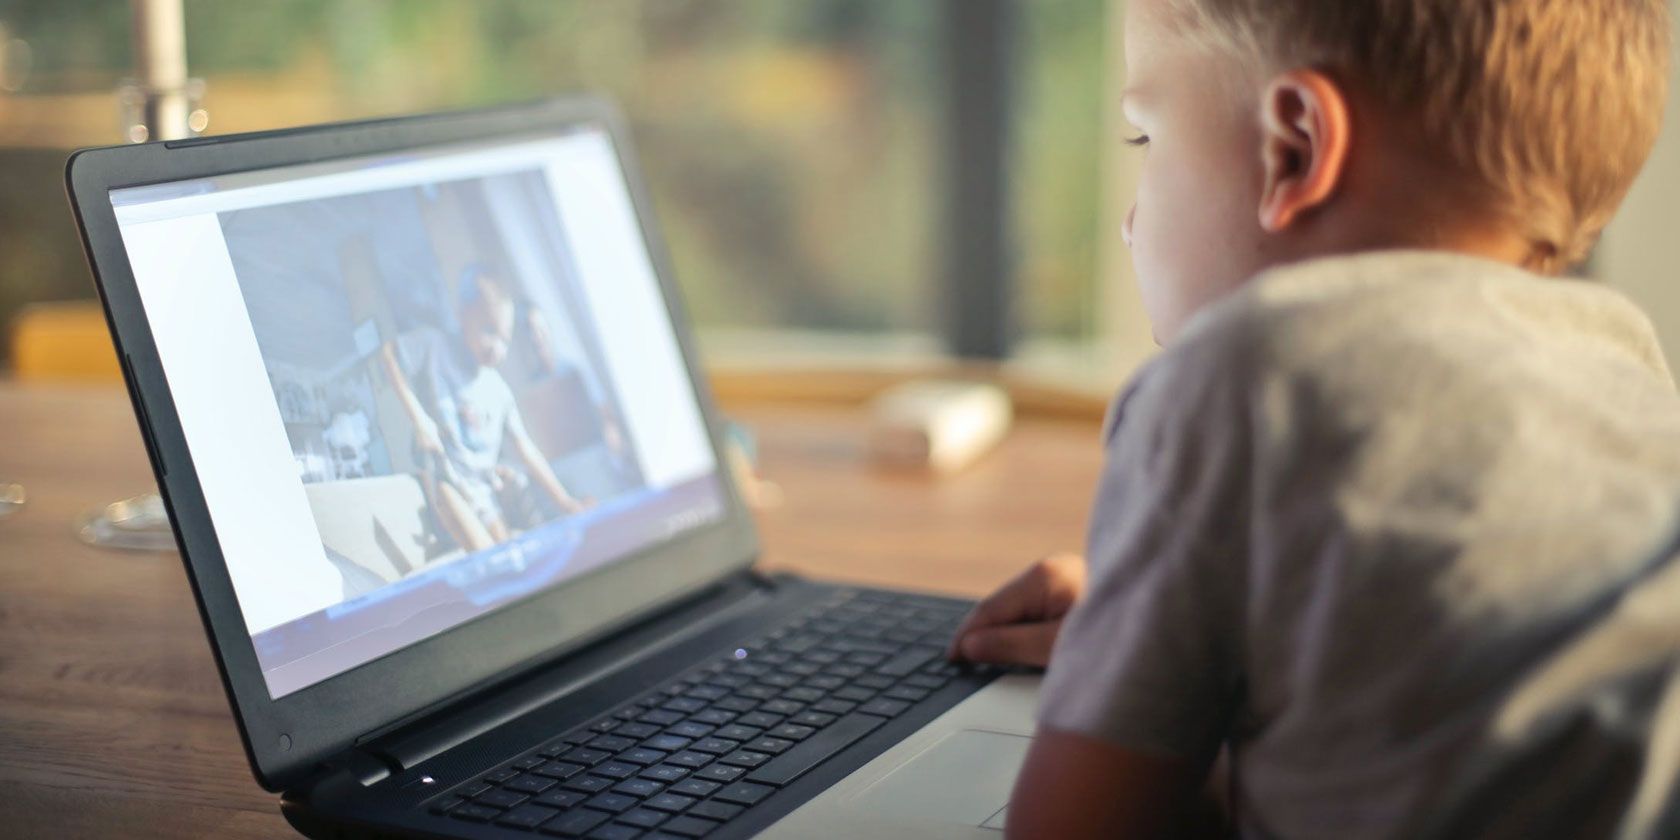 inshot video editor safe for kids